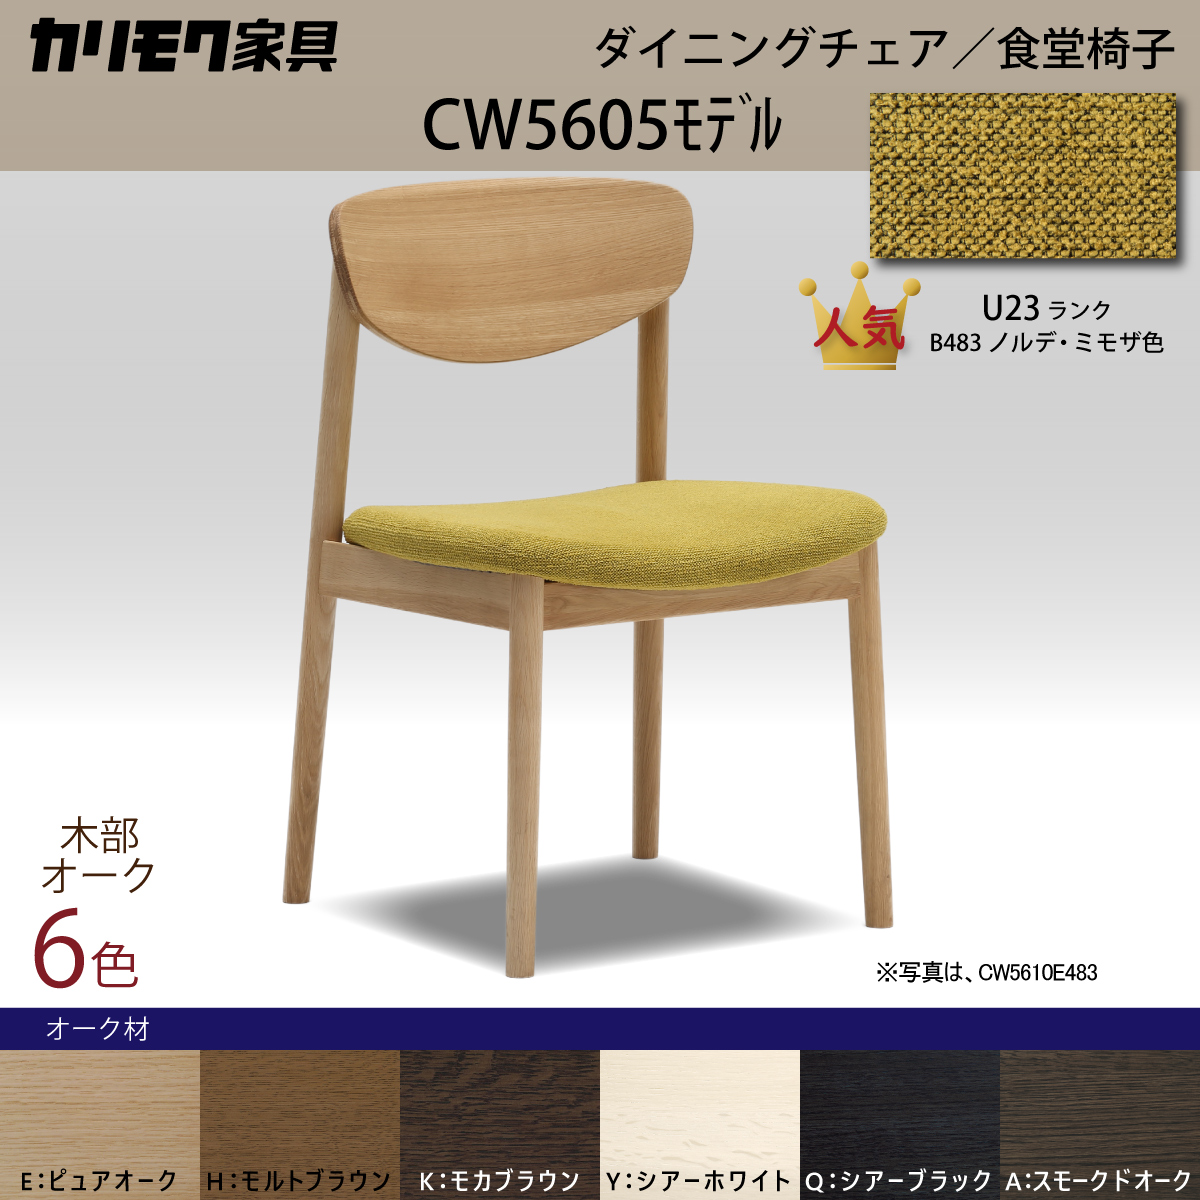 カリモク家具 ダイニングチェア カリモク 椅子 ダイニング CW5605